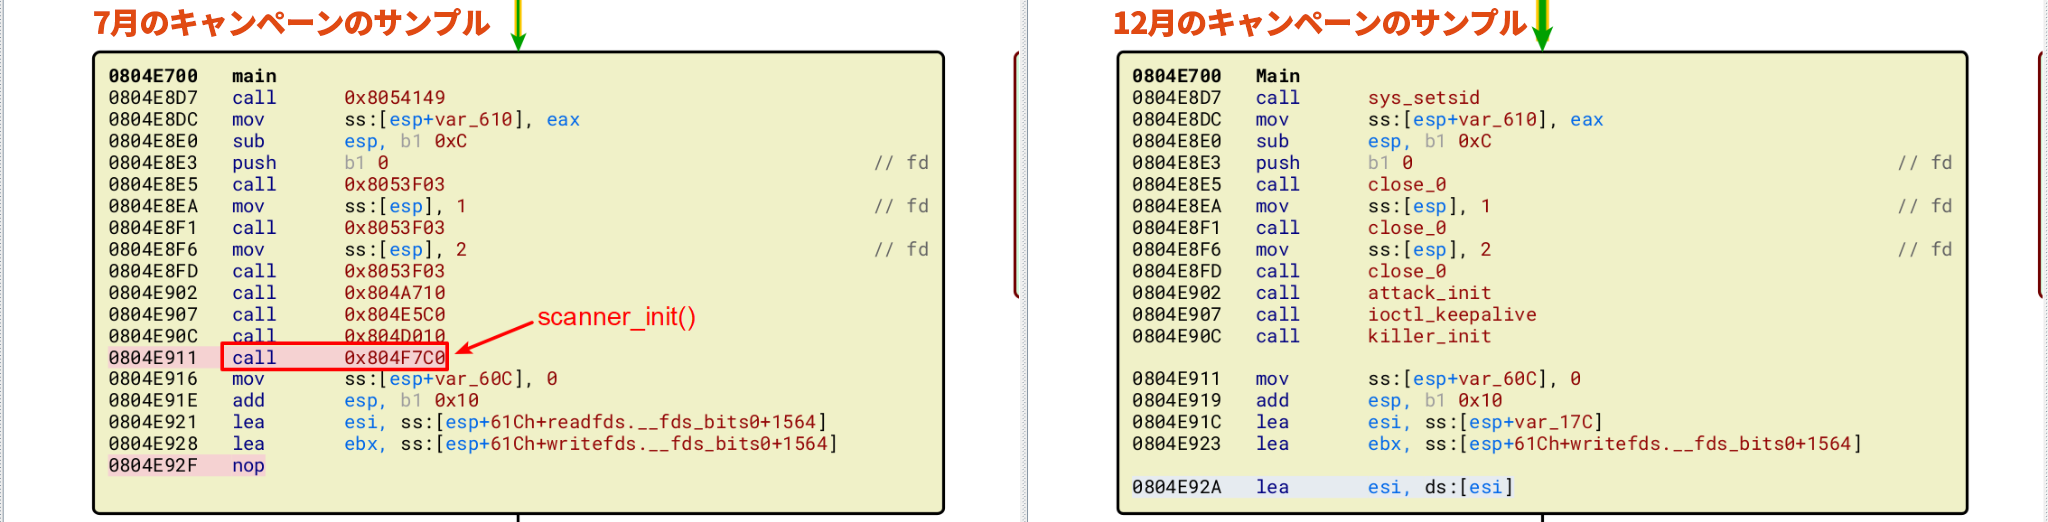 画像10は7月と12月のキャンペーンの比較例です。7月のキャンペーン(左)は「scanner_init()」を赤い矢印でハイライトしています。